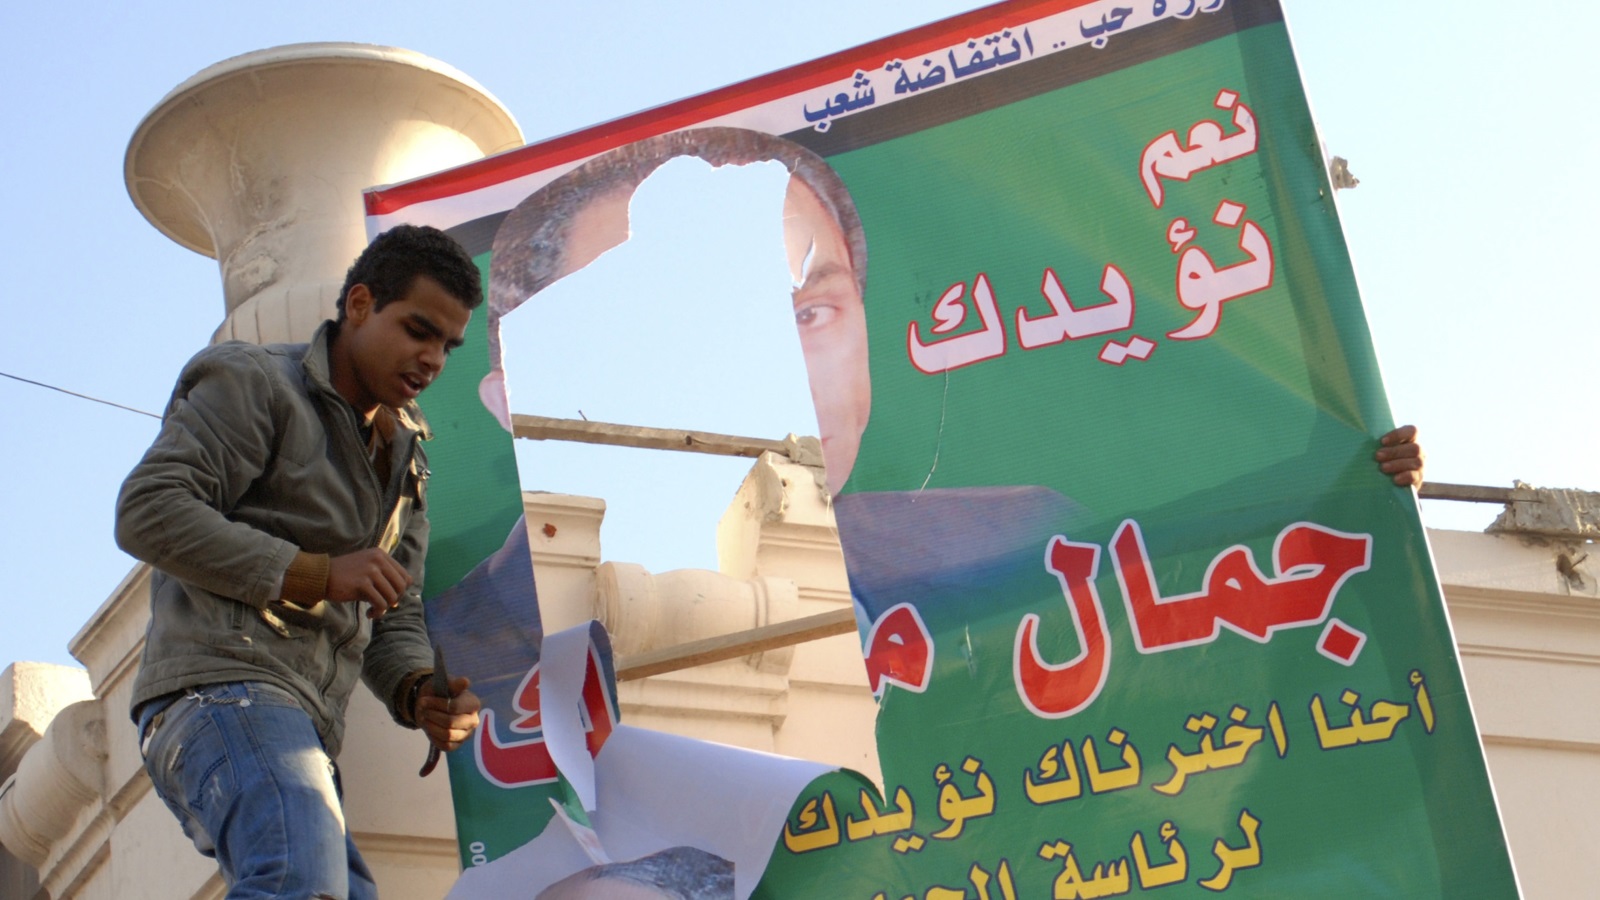 3- خطط توريث الحكم لنجل مبارك كانت أيضا أحد الأسباب المحركة للاحتجاجات رويترز